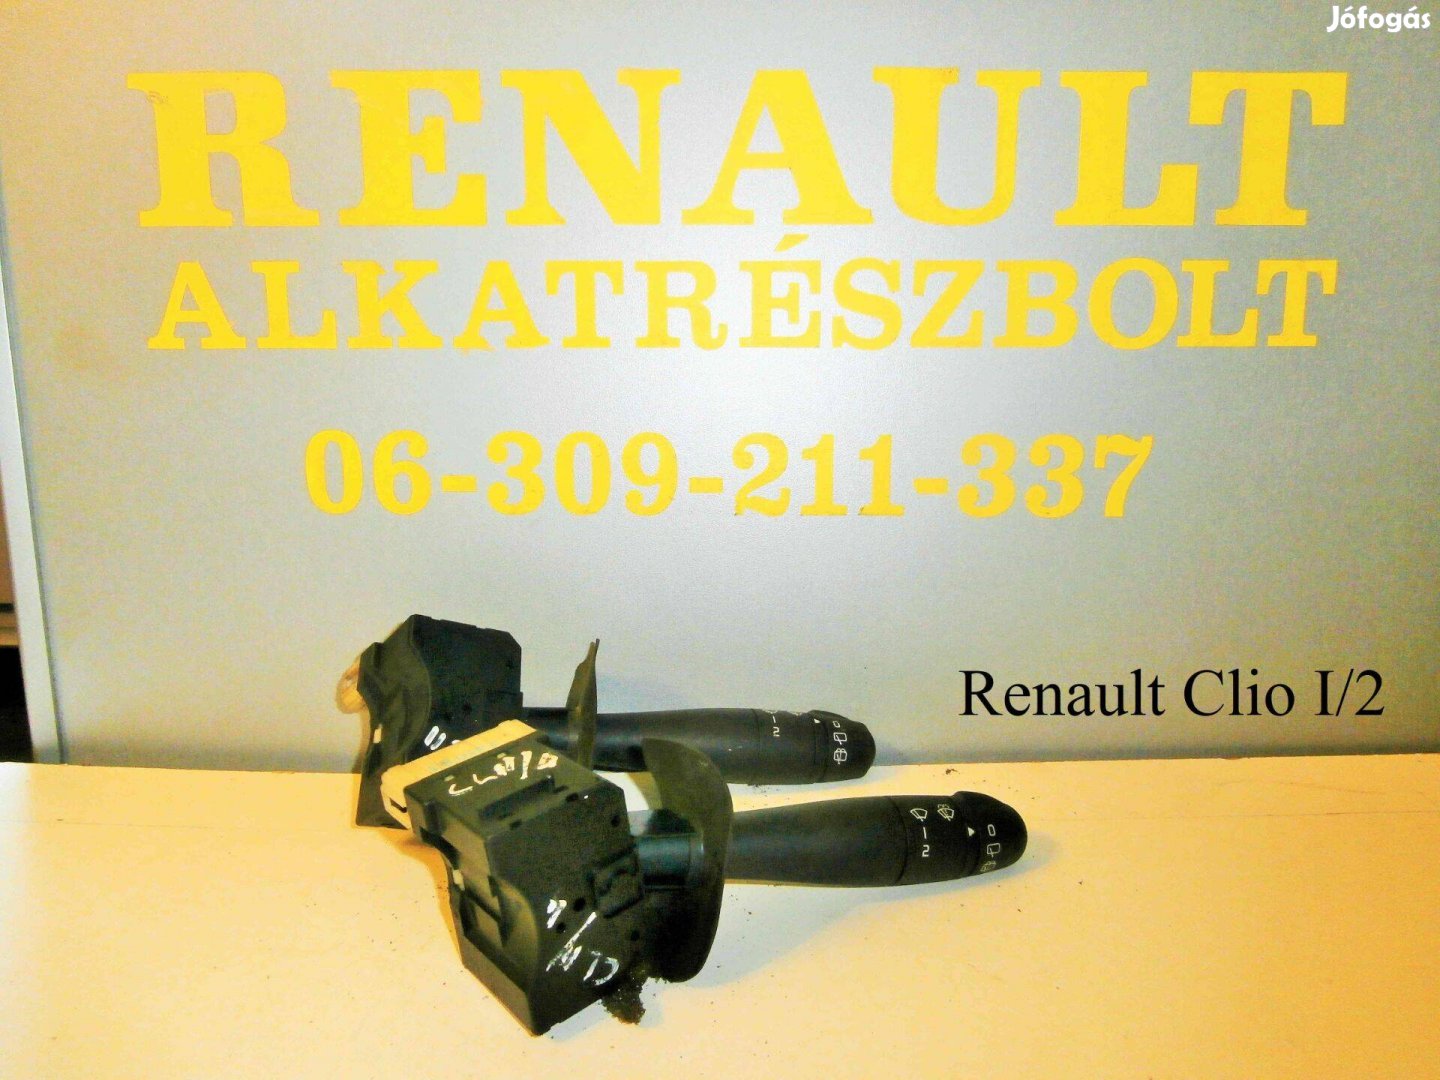 Renault Clio I/2 ablaktörlő kapcsoló